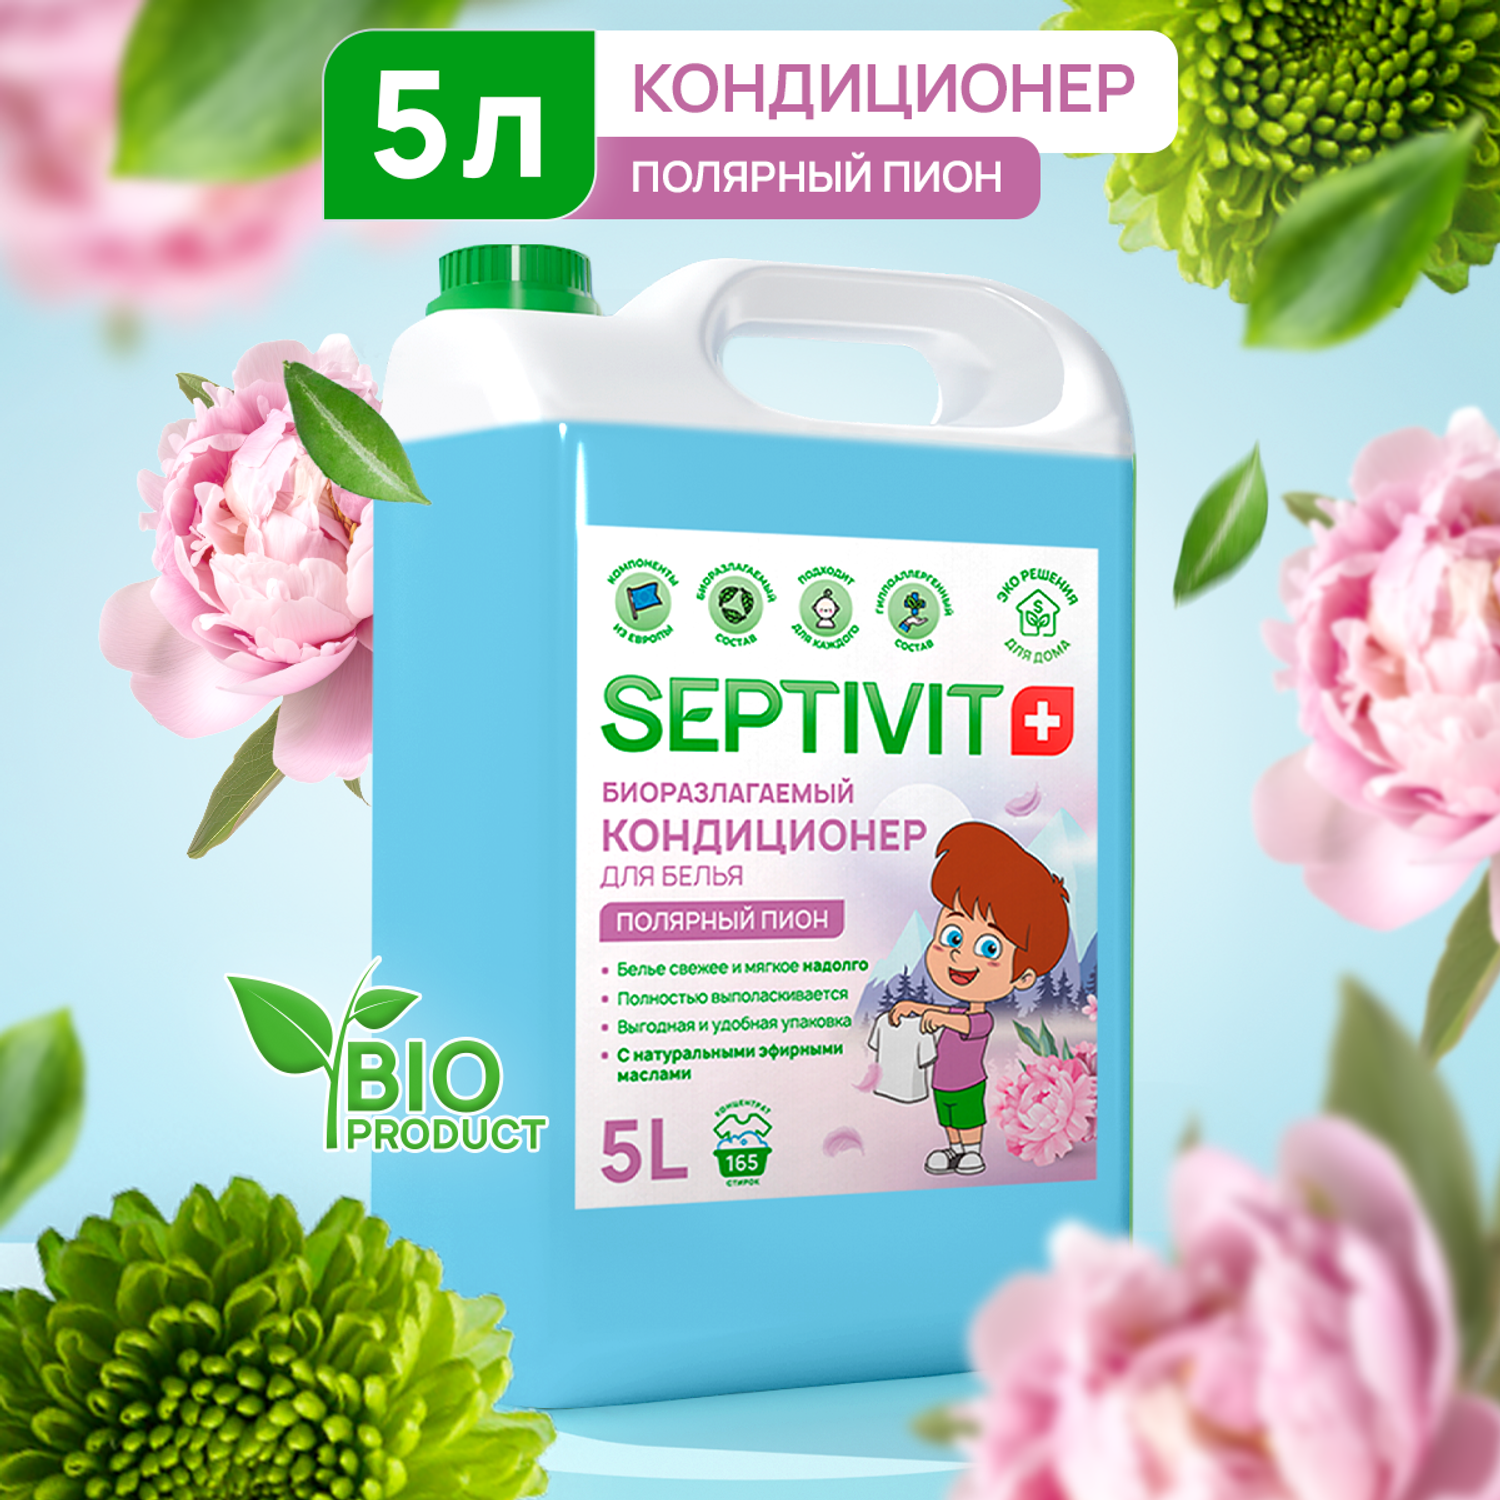 Кондиционер для белья SEPTIVIT Premium 5л с ароматом Полярный пион - фото 1